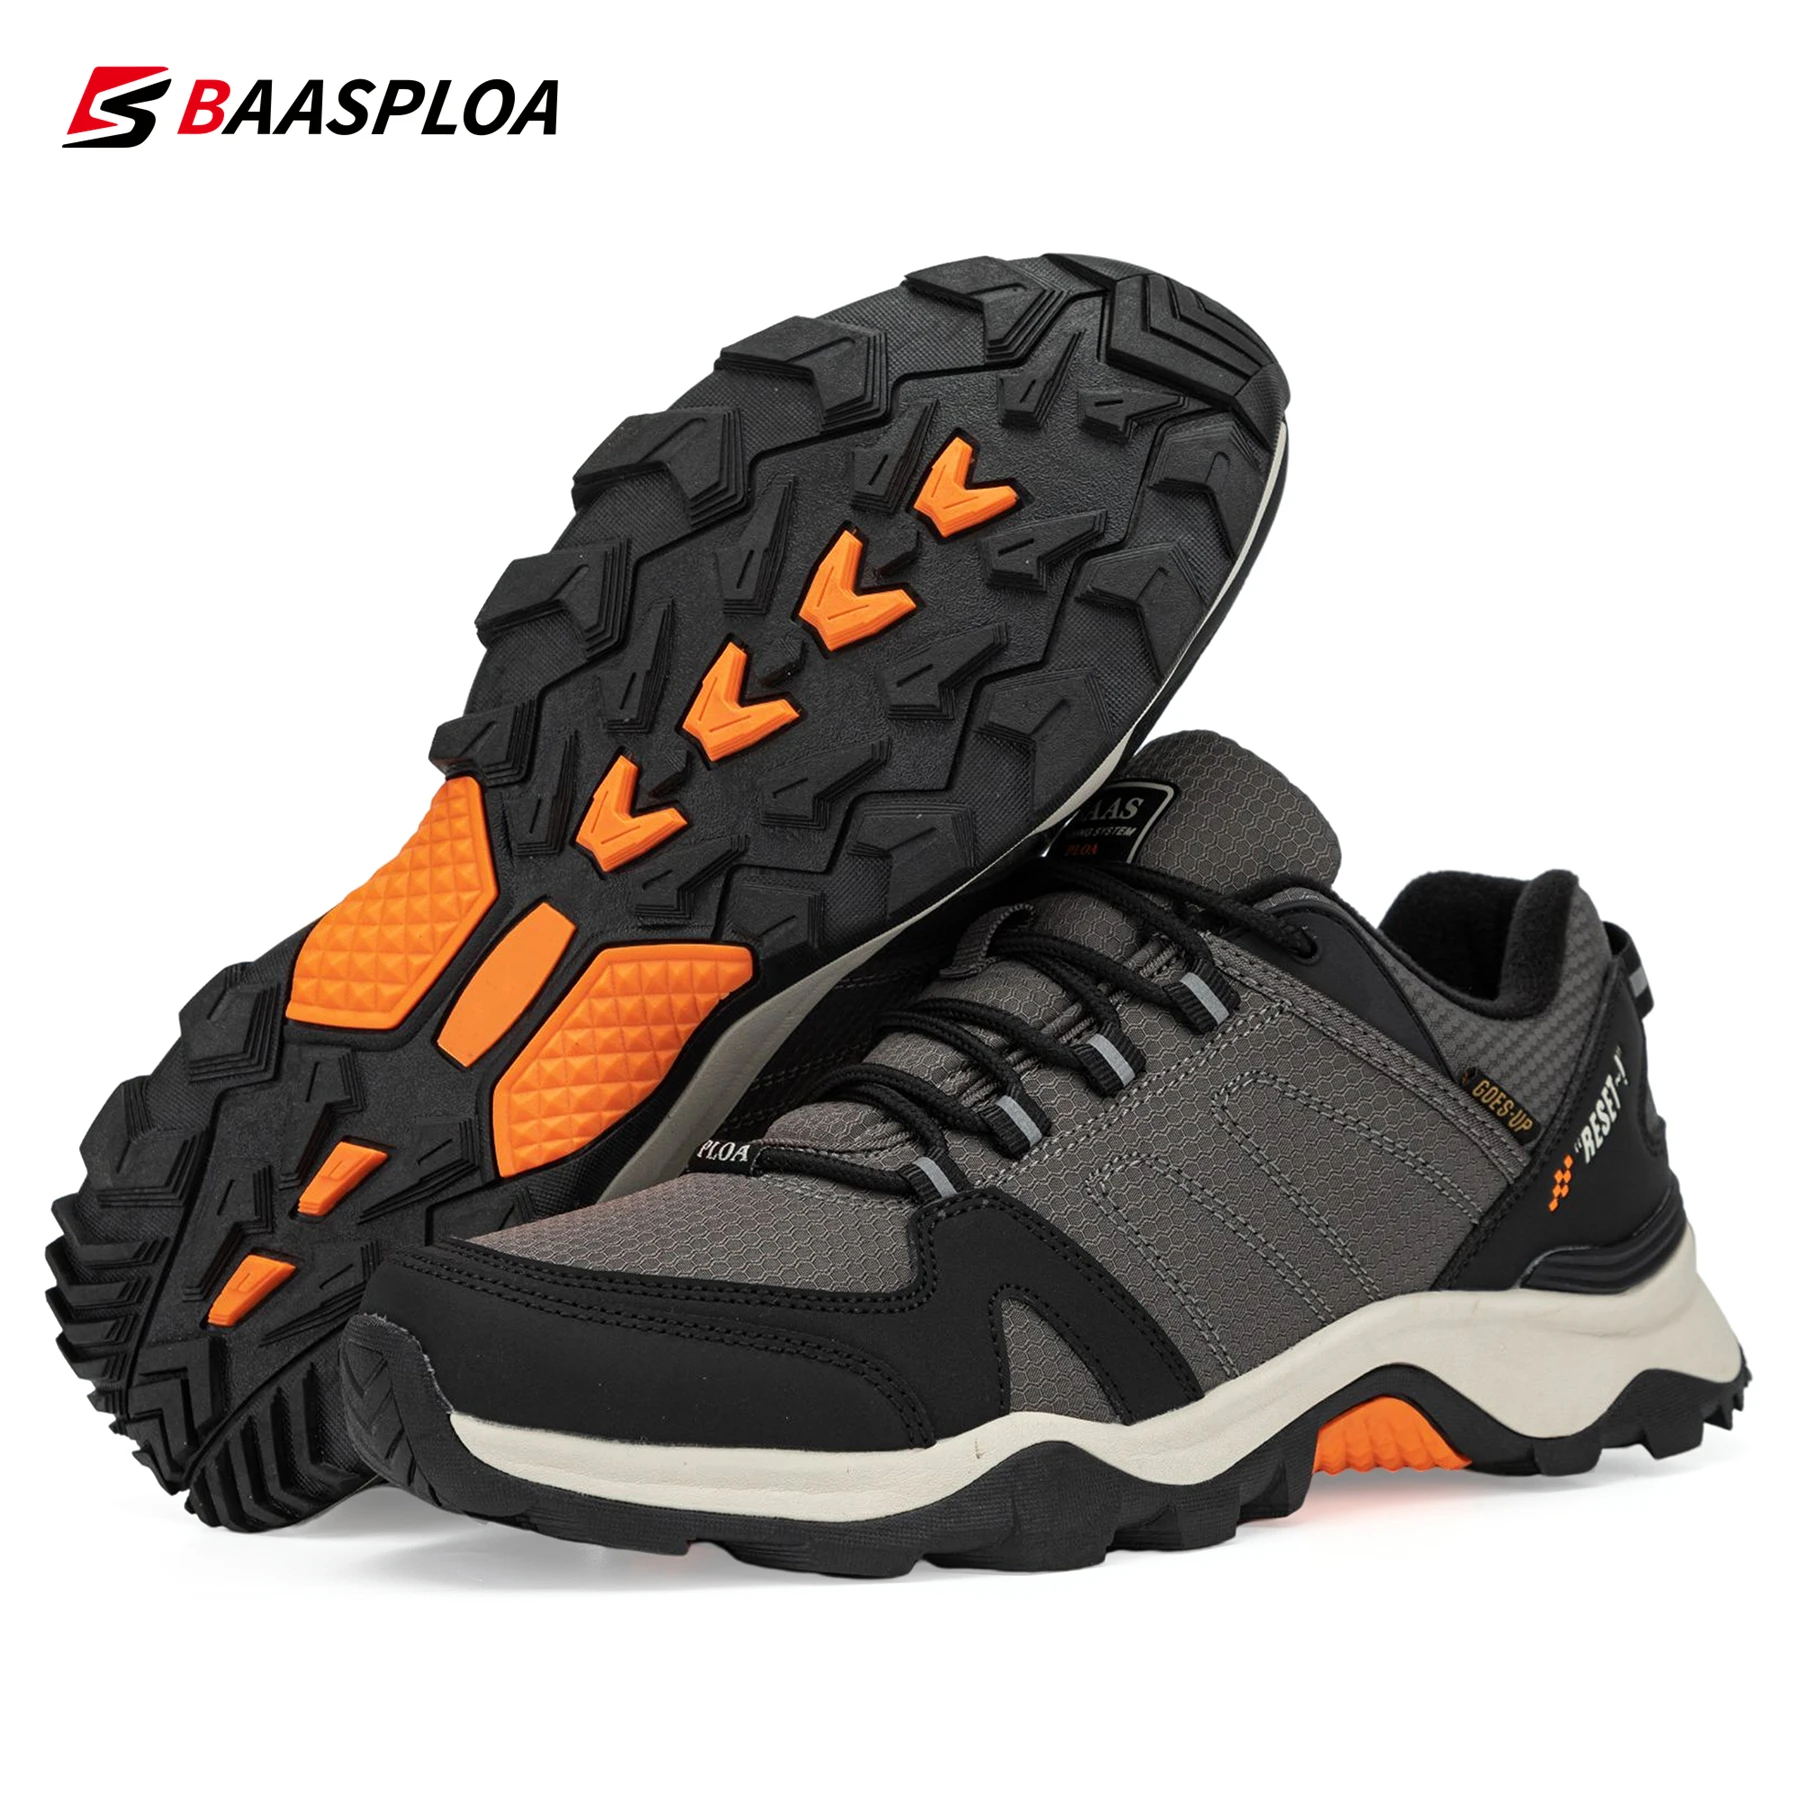 Baasploa-Zapatillas de senderismo antideslizantes para hombre, zapatos de exterior resistentes al desgaste, de cuero, impermeables, talla grande 41-50, 2022